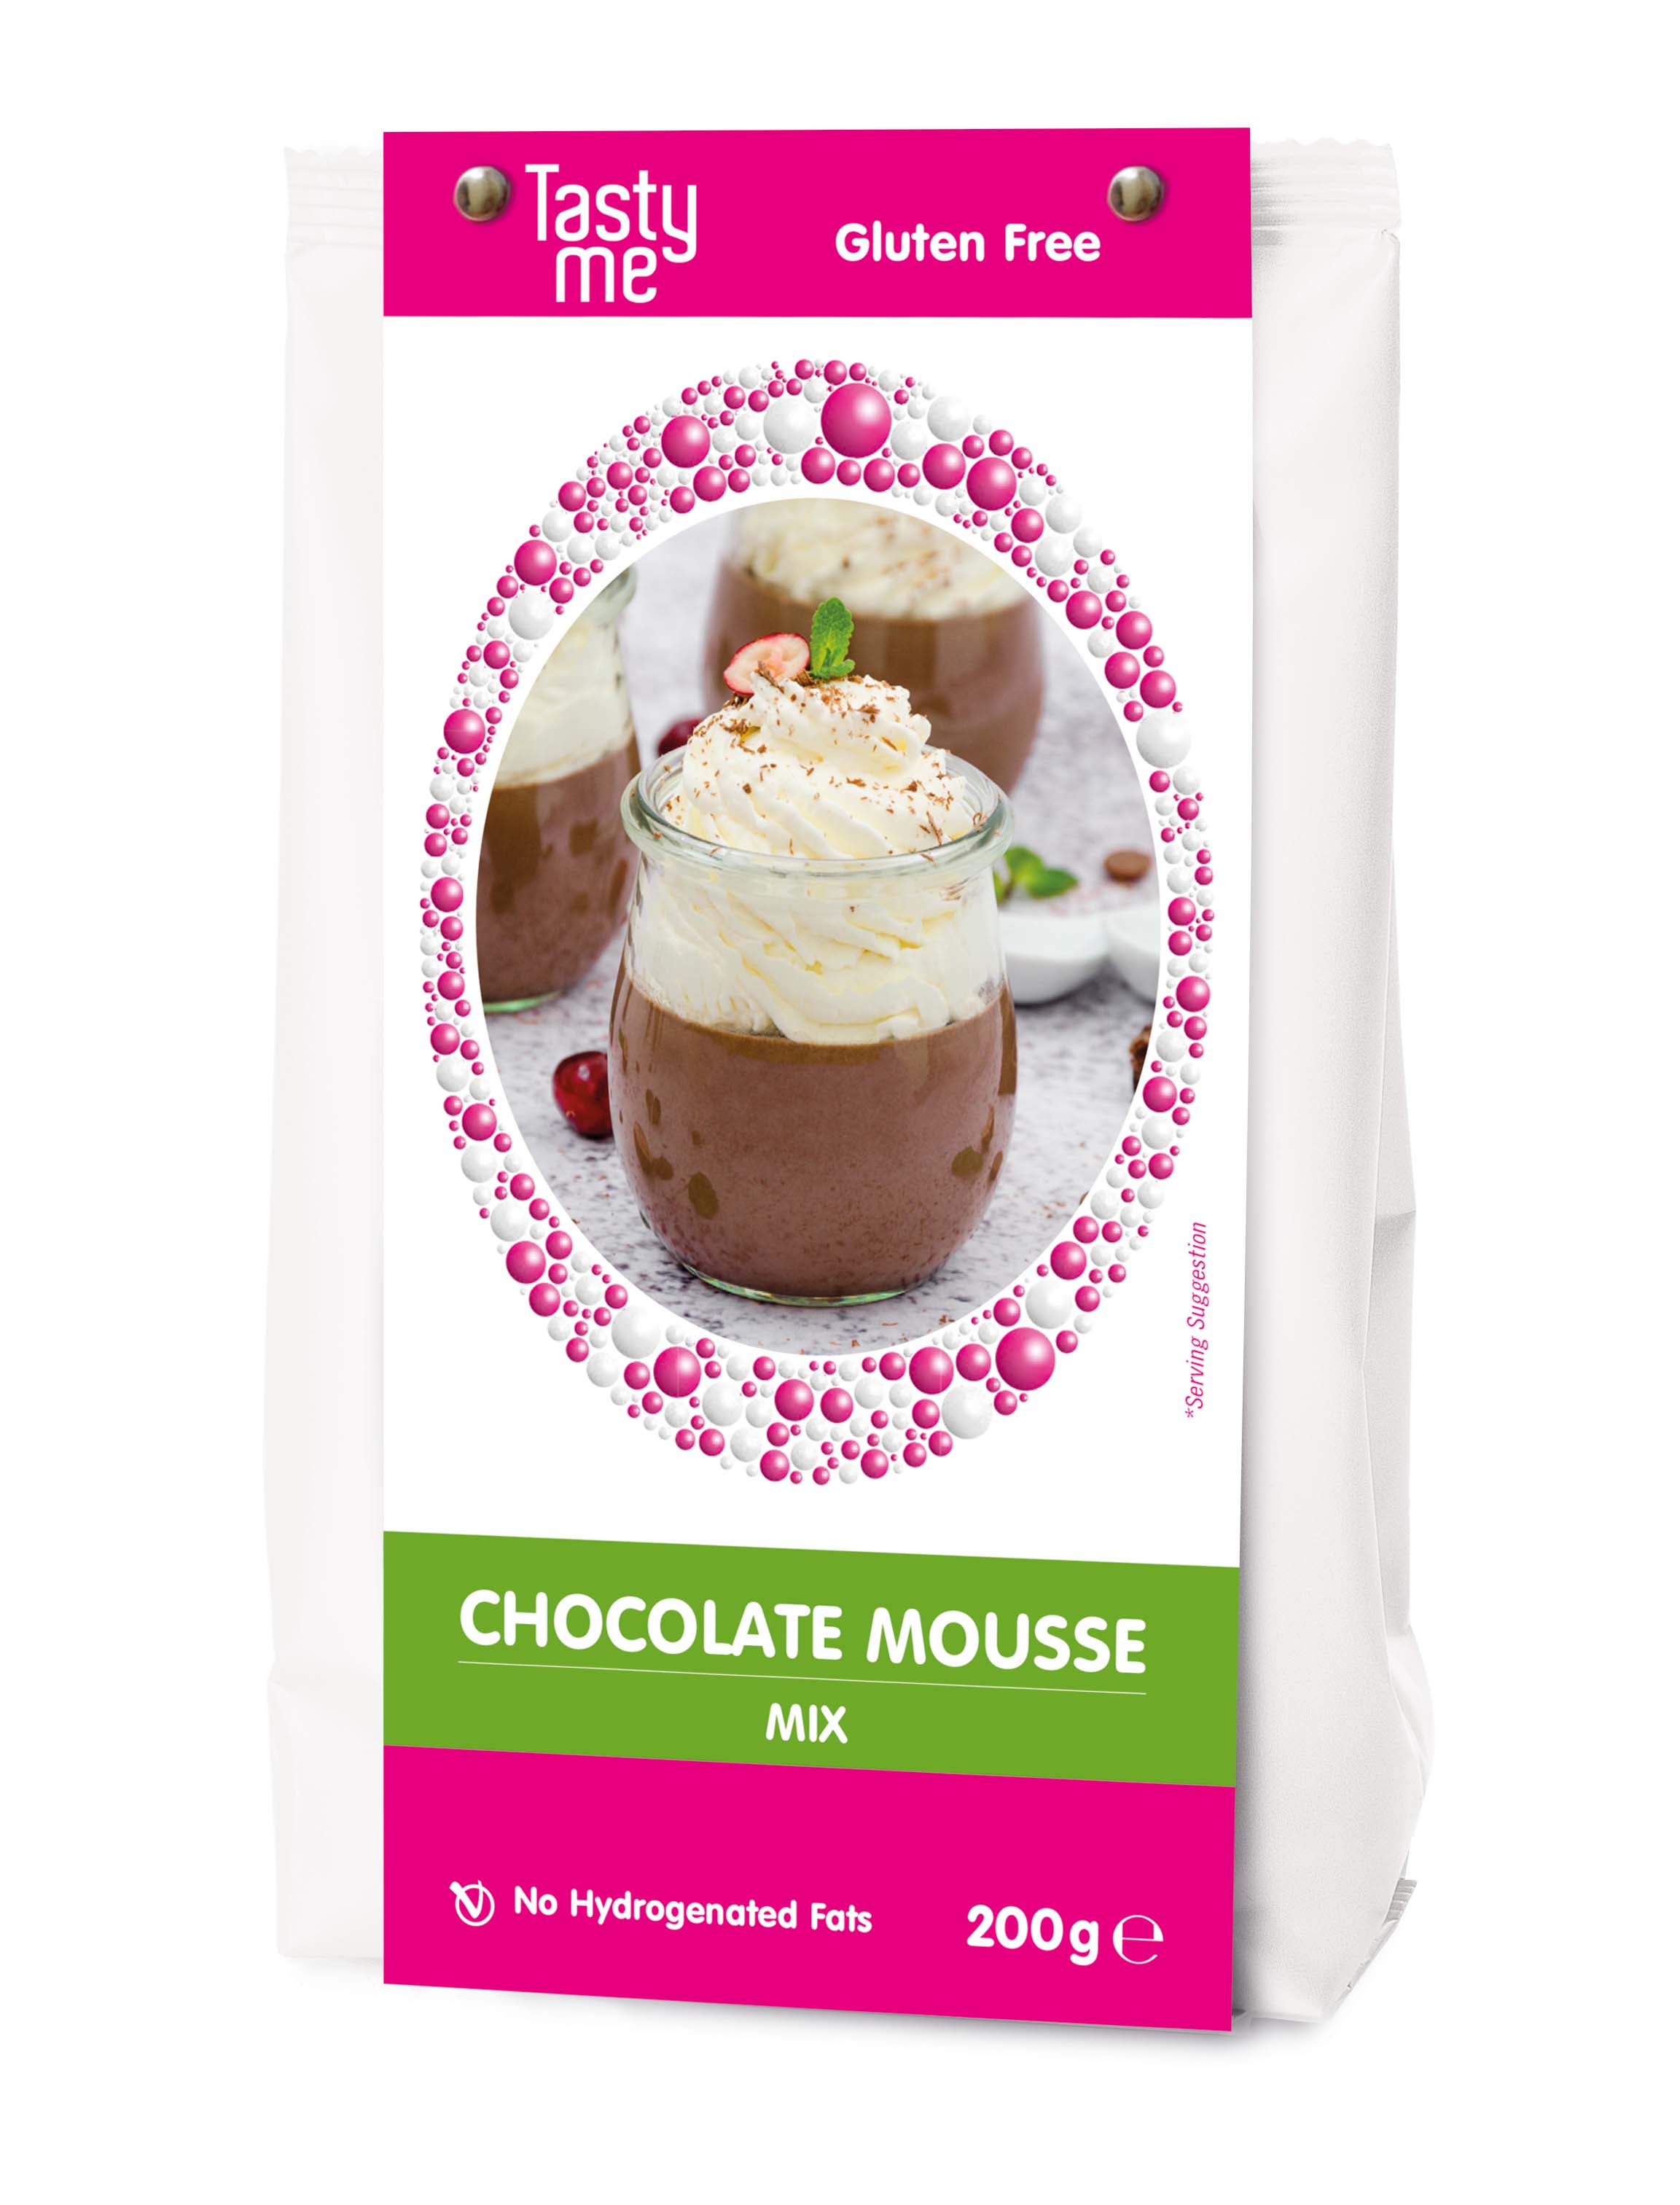 Choco mousse dessert mix 200g - gluten-free